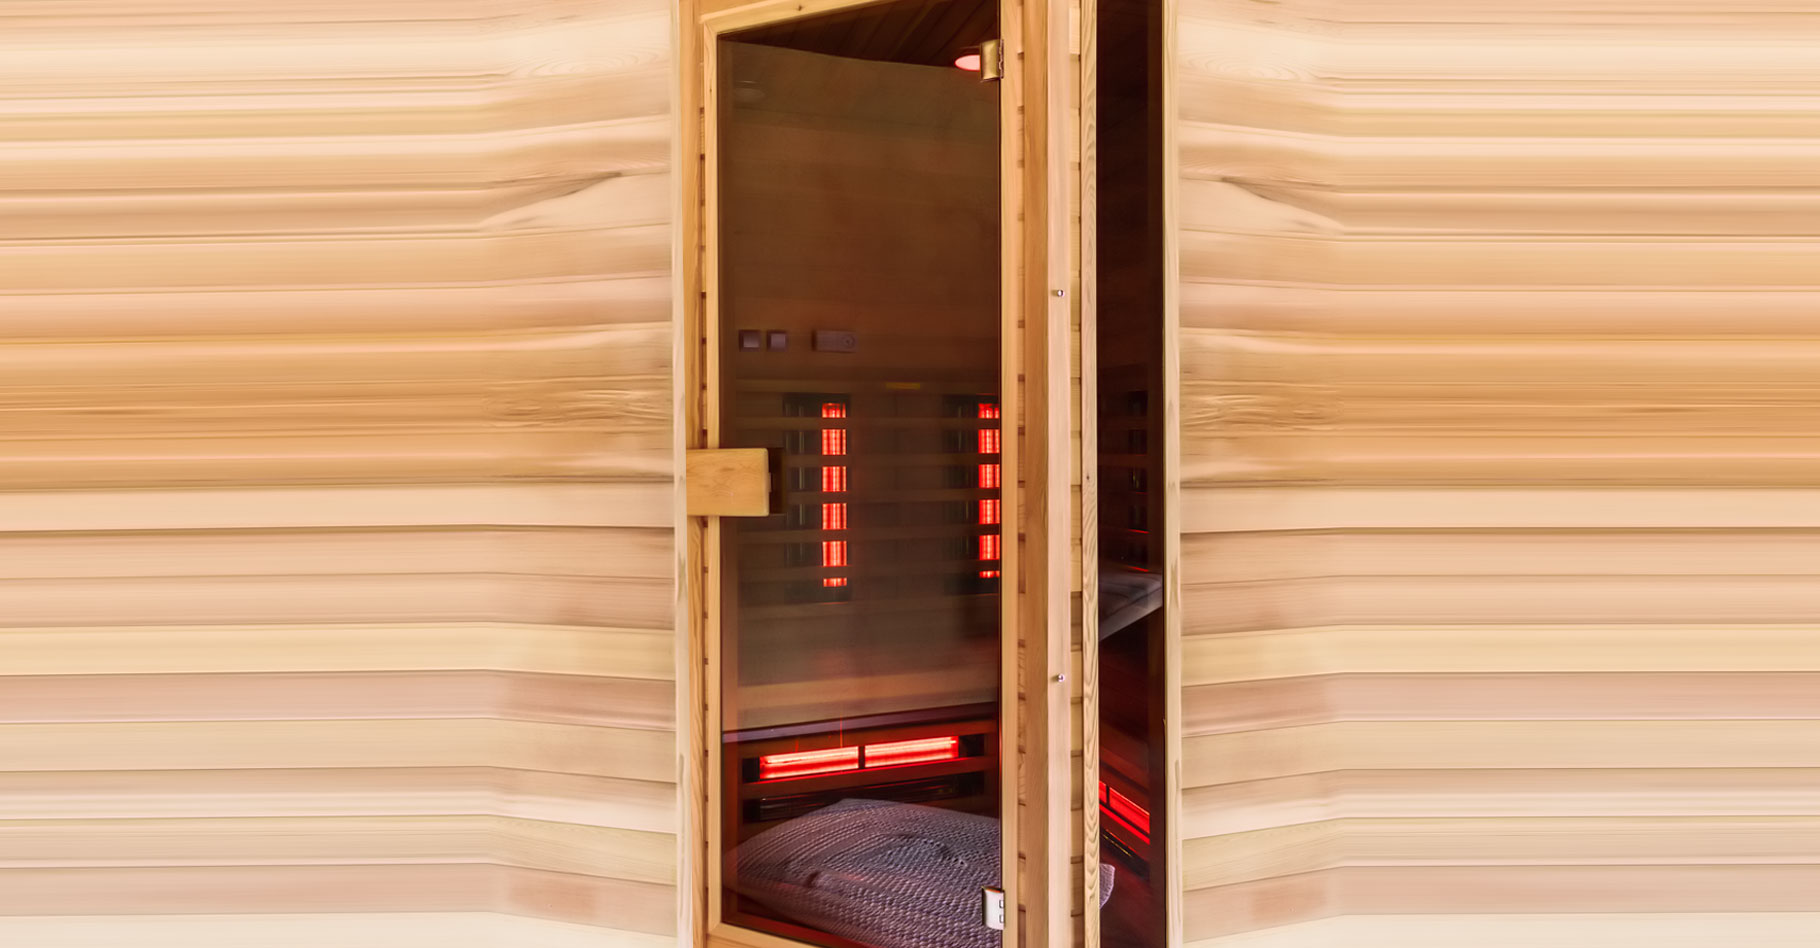 Le sauna infrarouge : avantages et inconvénients